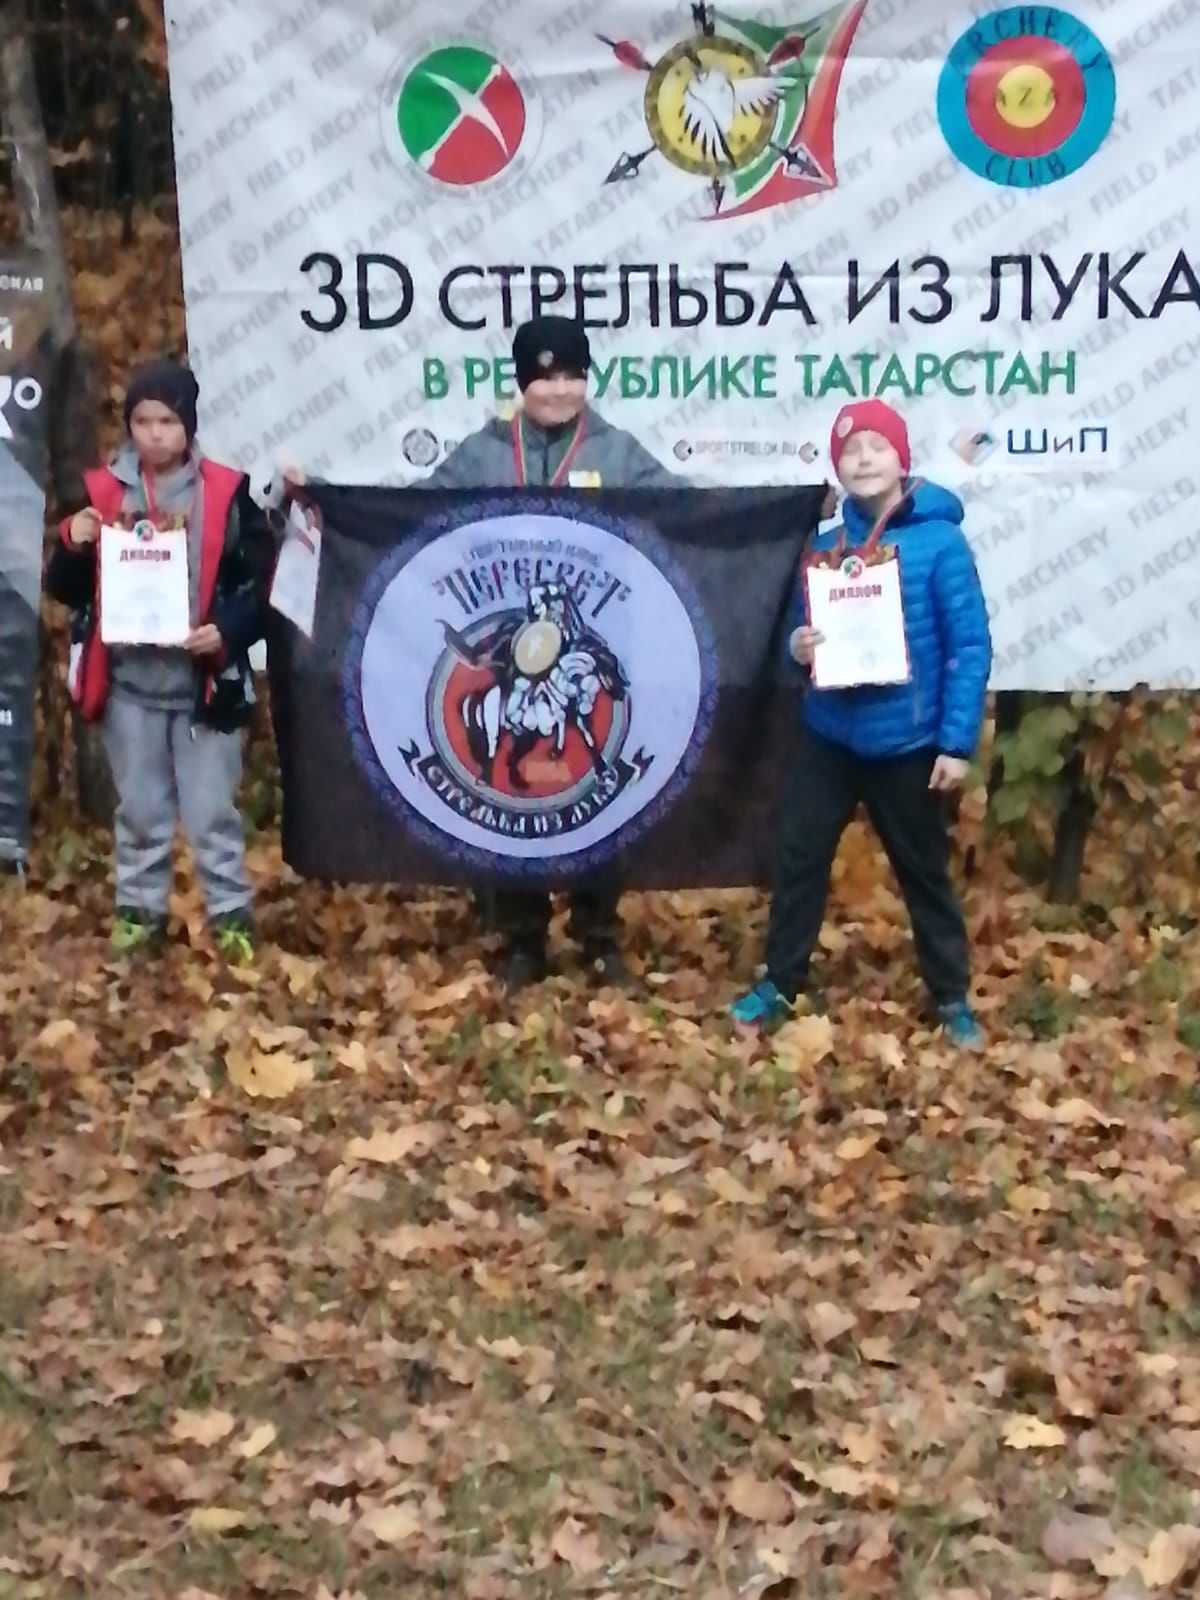 В Верхнеуслонском районе прошел Чемпионат Татарстана по 3D стрельбе